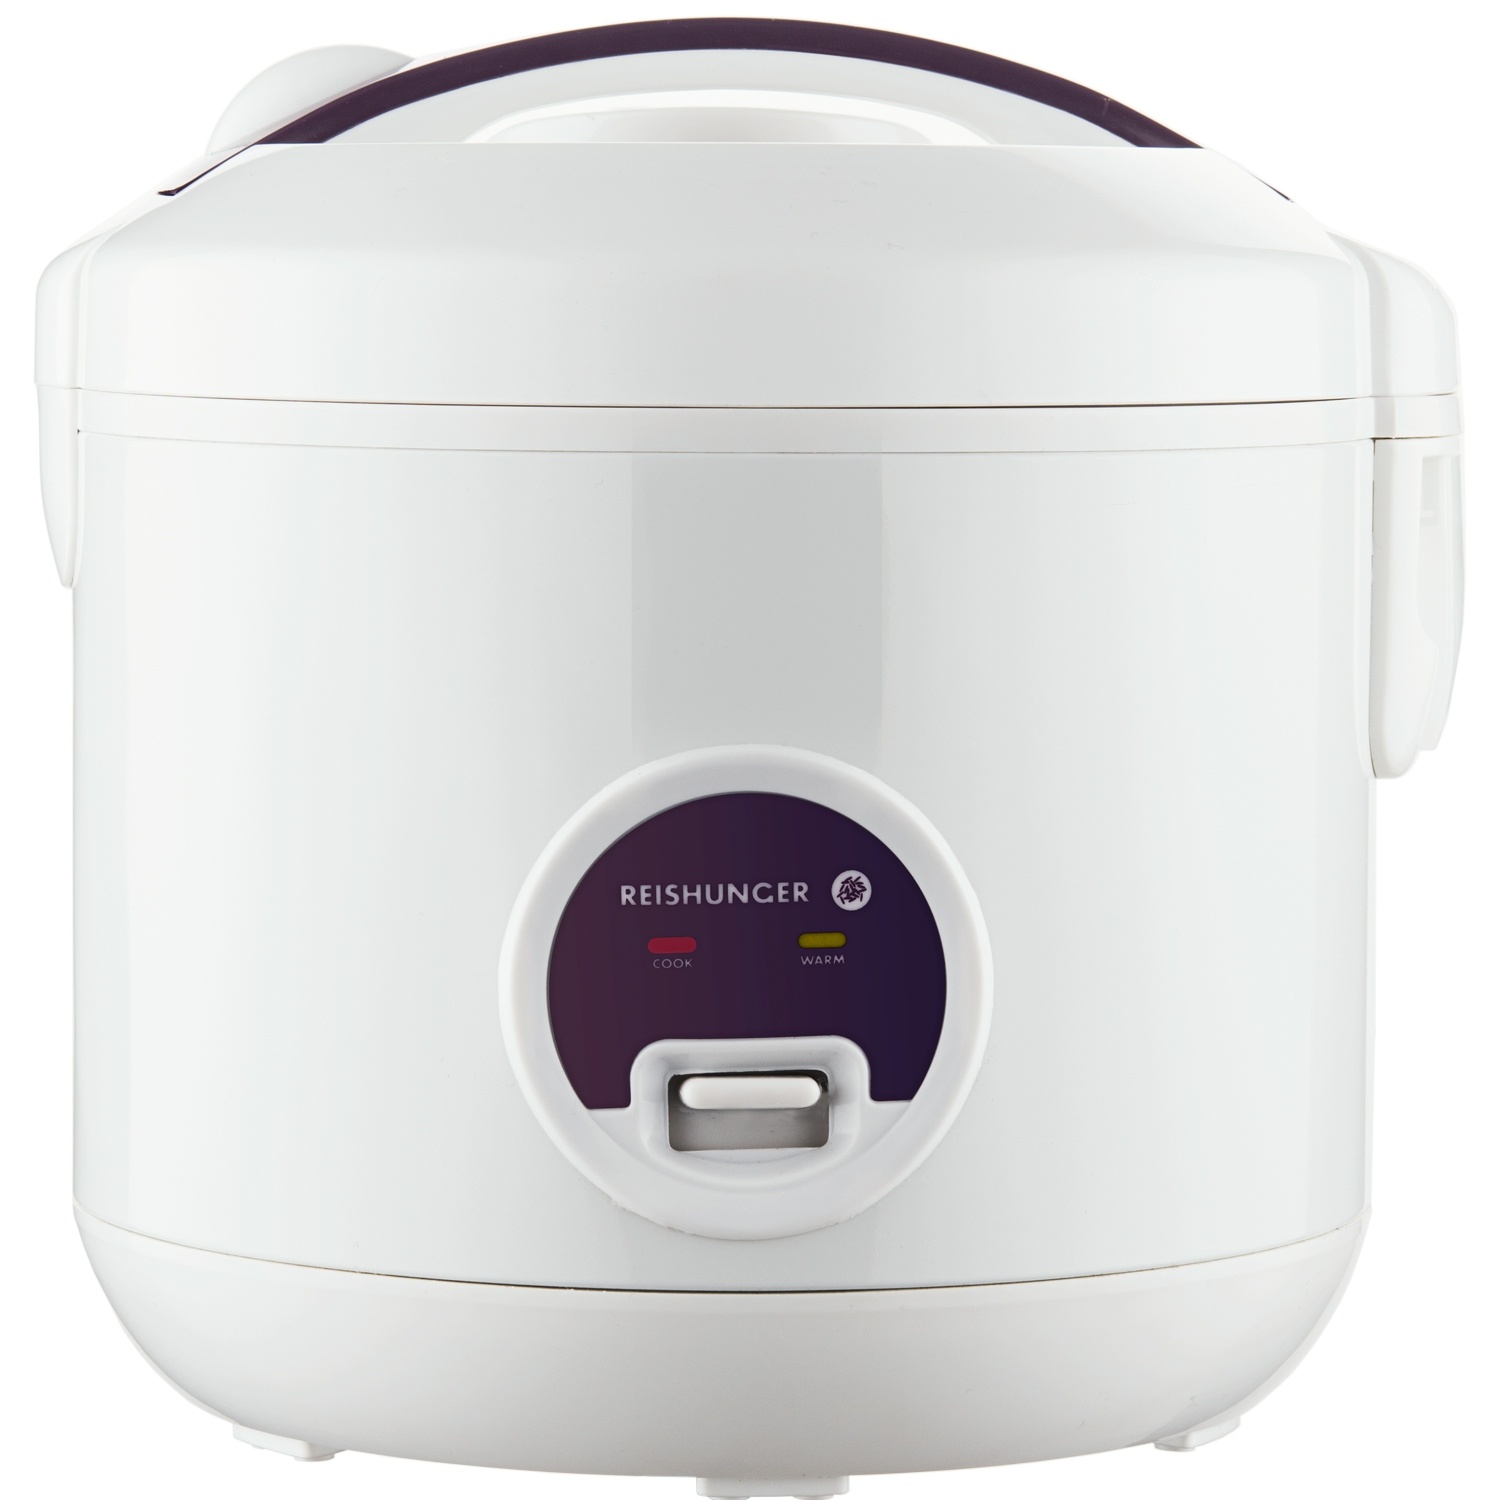 Reishunger Reiskocher & Dampfgarer - Antihaftbeschichtung - Für 1-6 Personen - Schnelle Zubereitung ohne Anbrennen - Mit Warmhaltefunktion